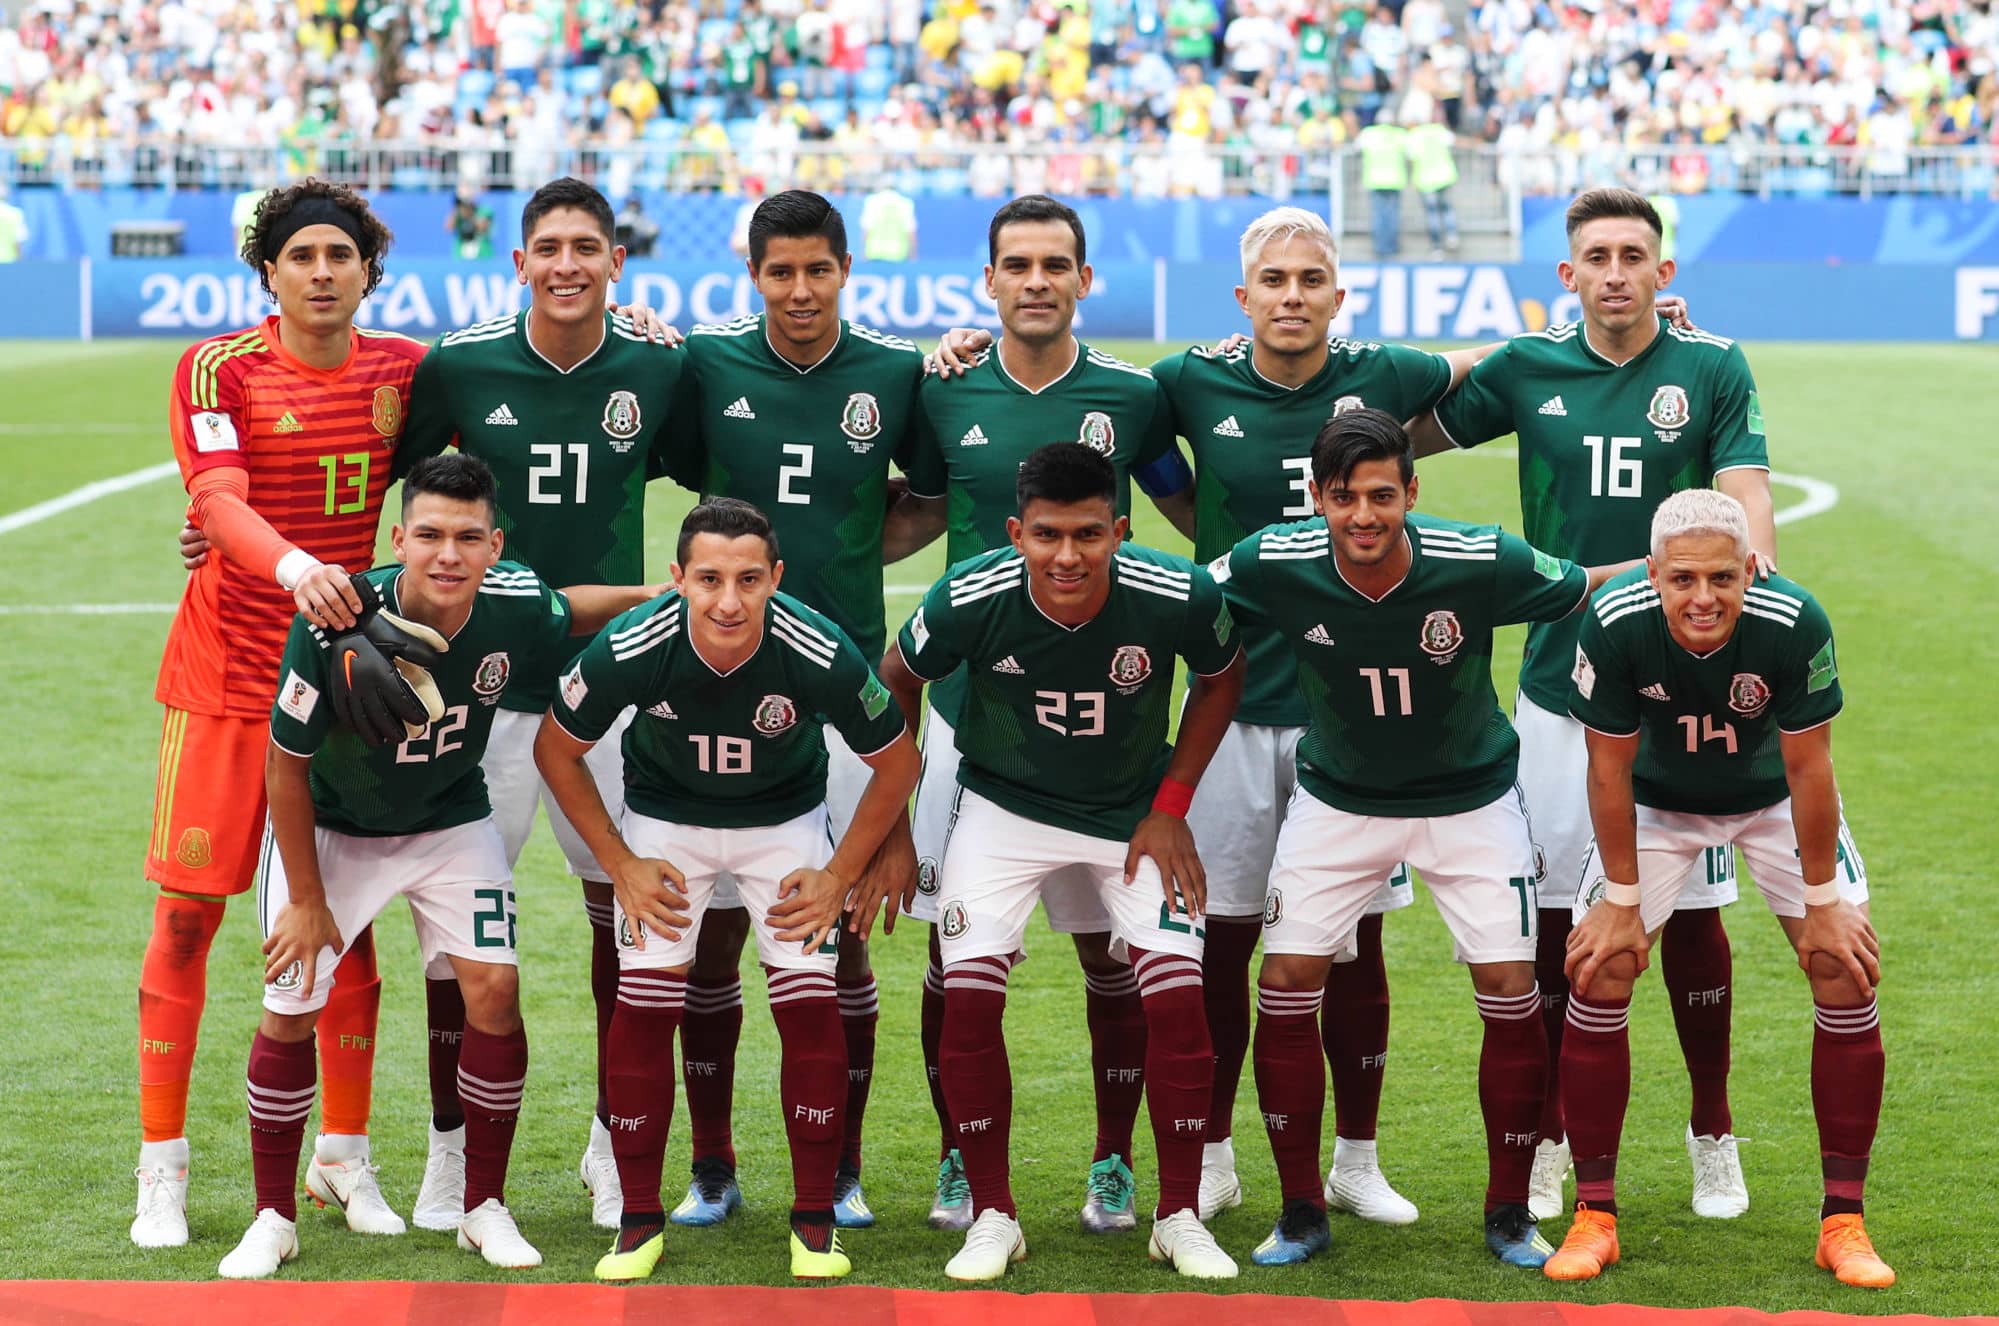 Seleção do México tira foto na Copa do Mundo na Rússia, partida foi disputada entre México e Brasil.